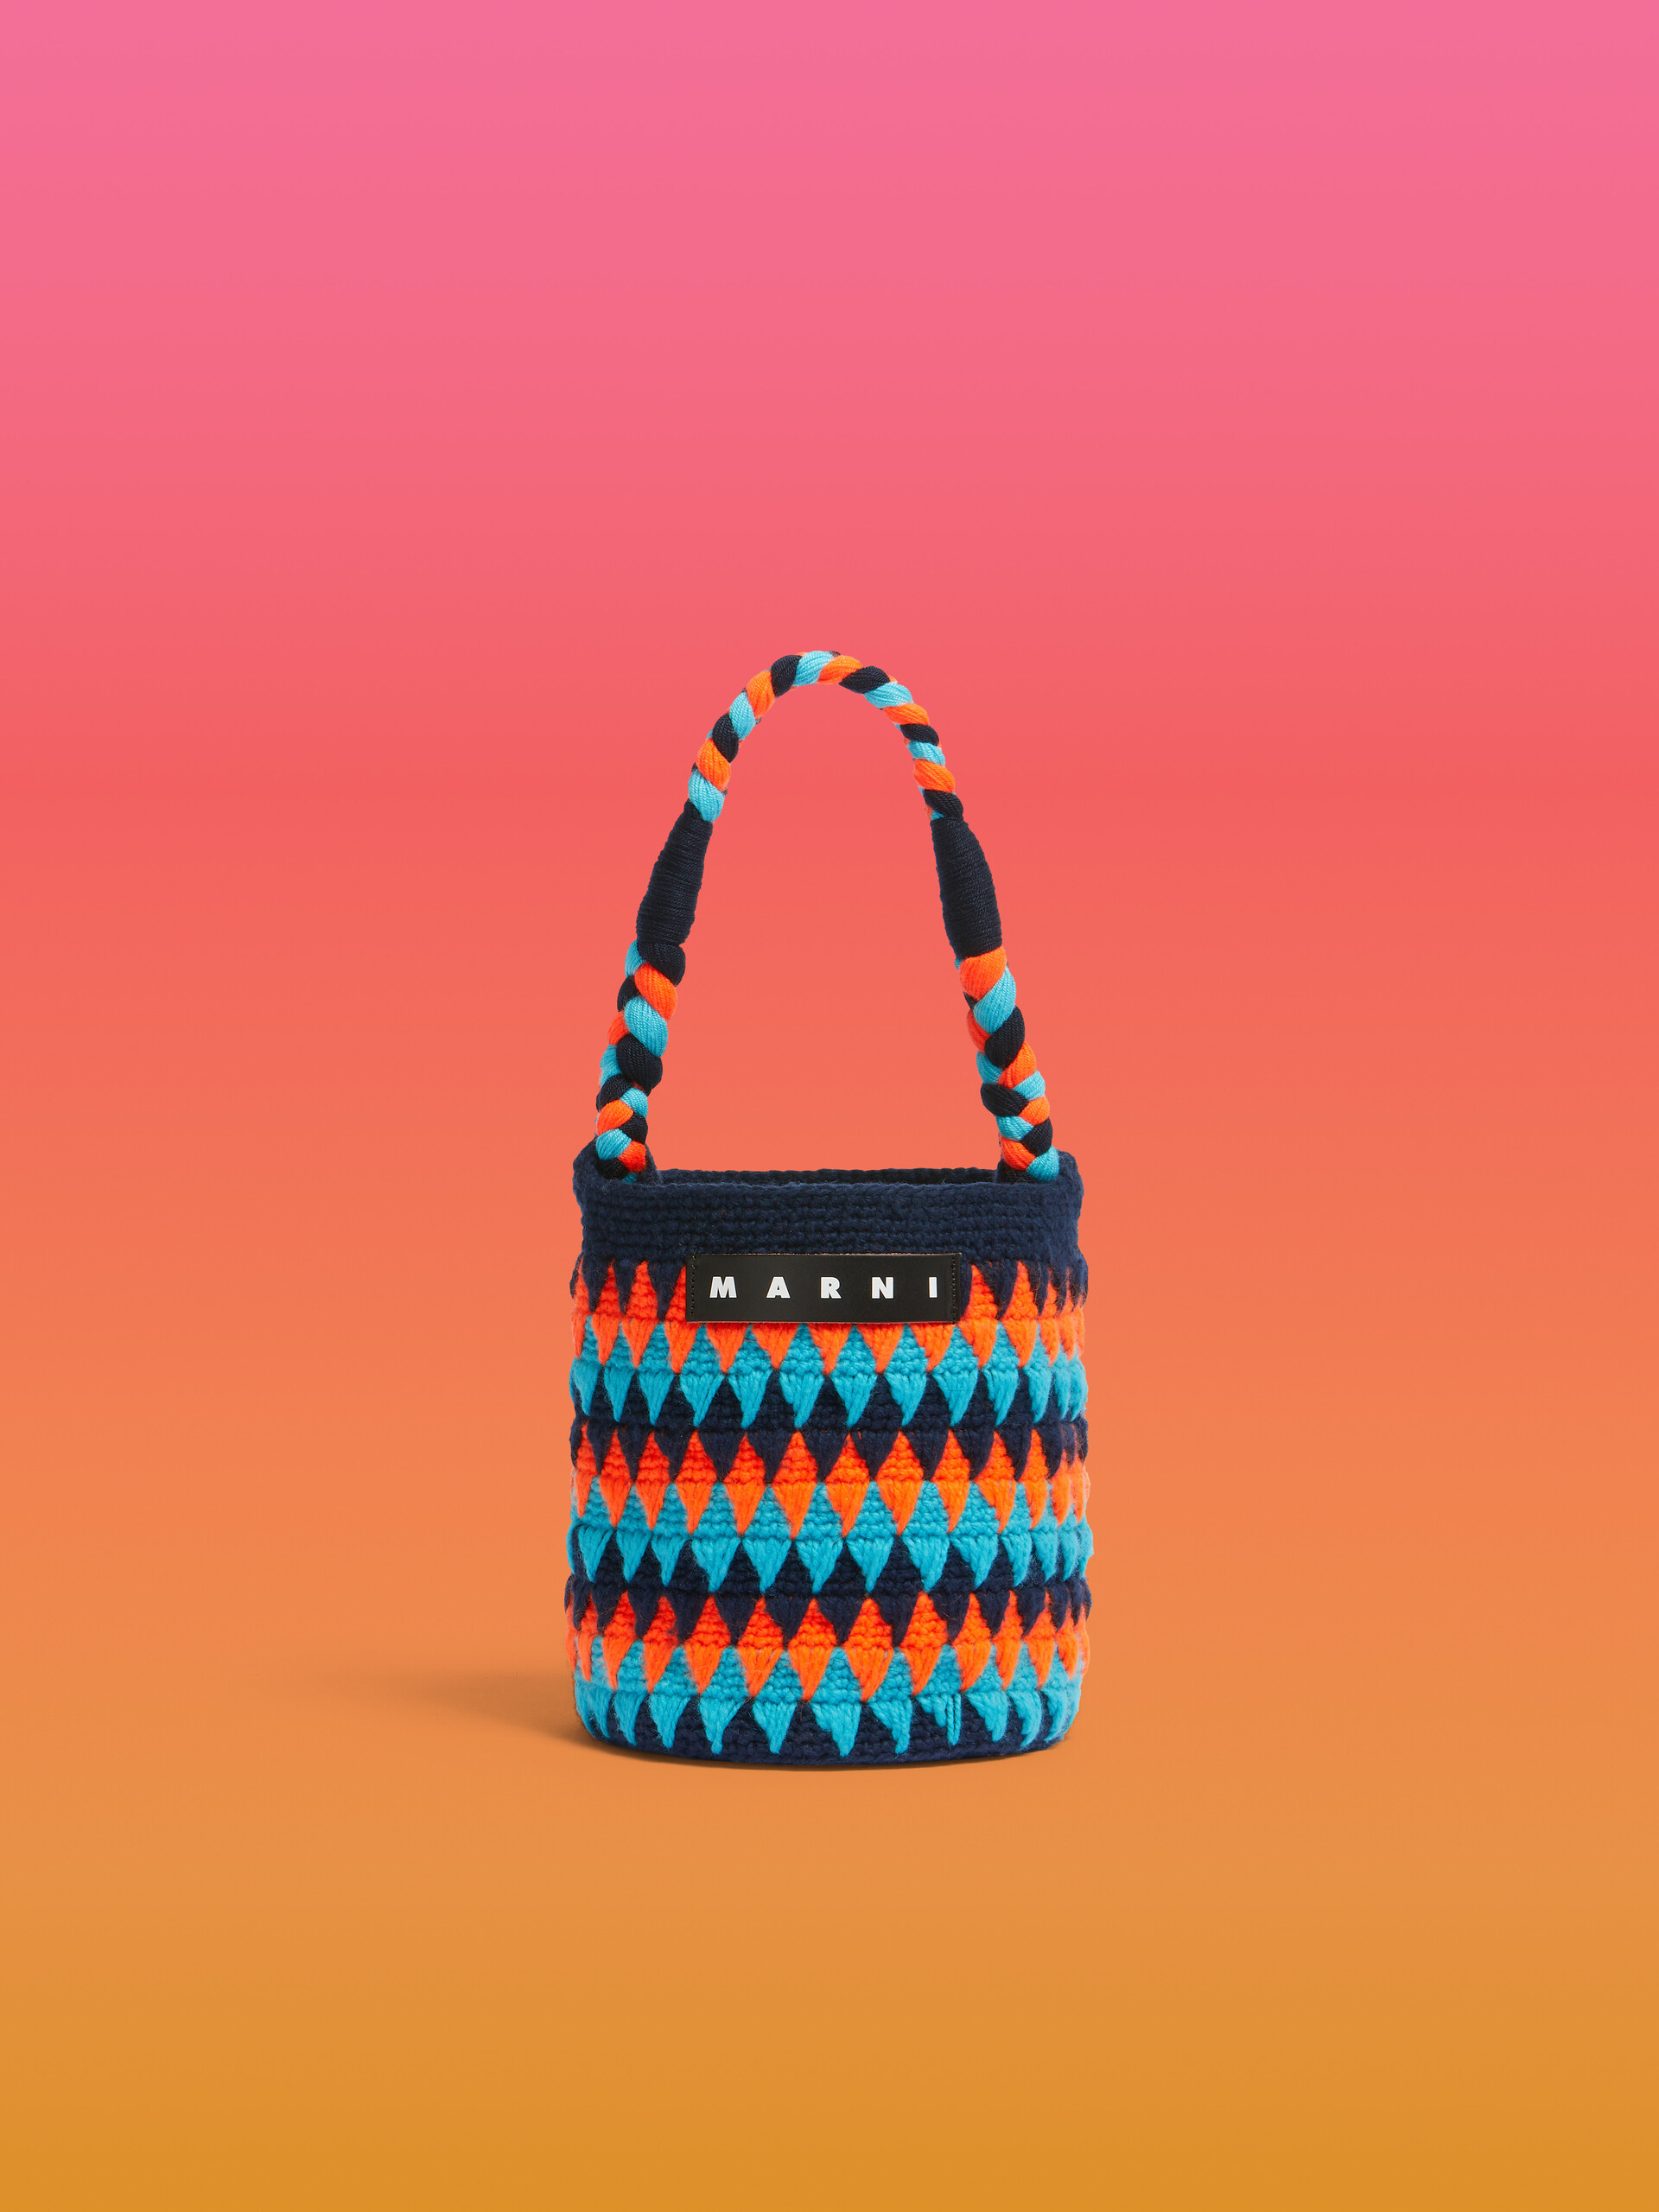 Sac Marni Market Chessboard orange et bleu réalisé au crochet - Sacs cabas - Image 1